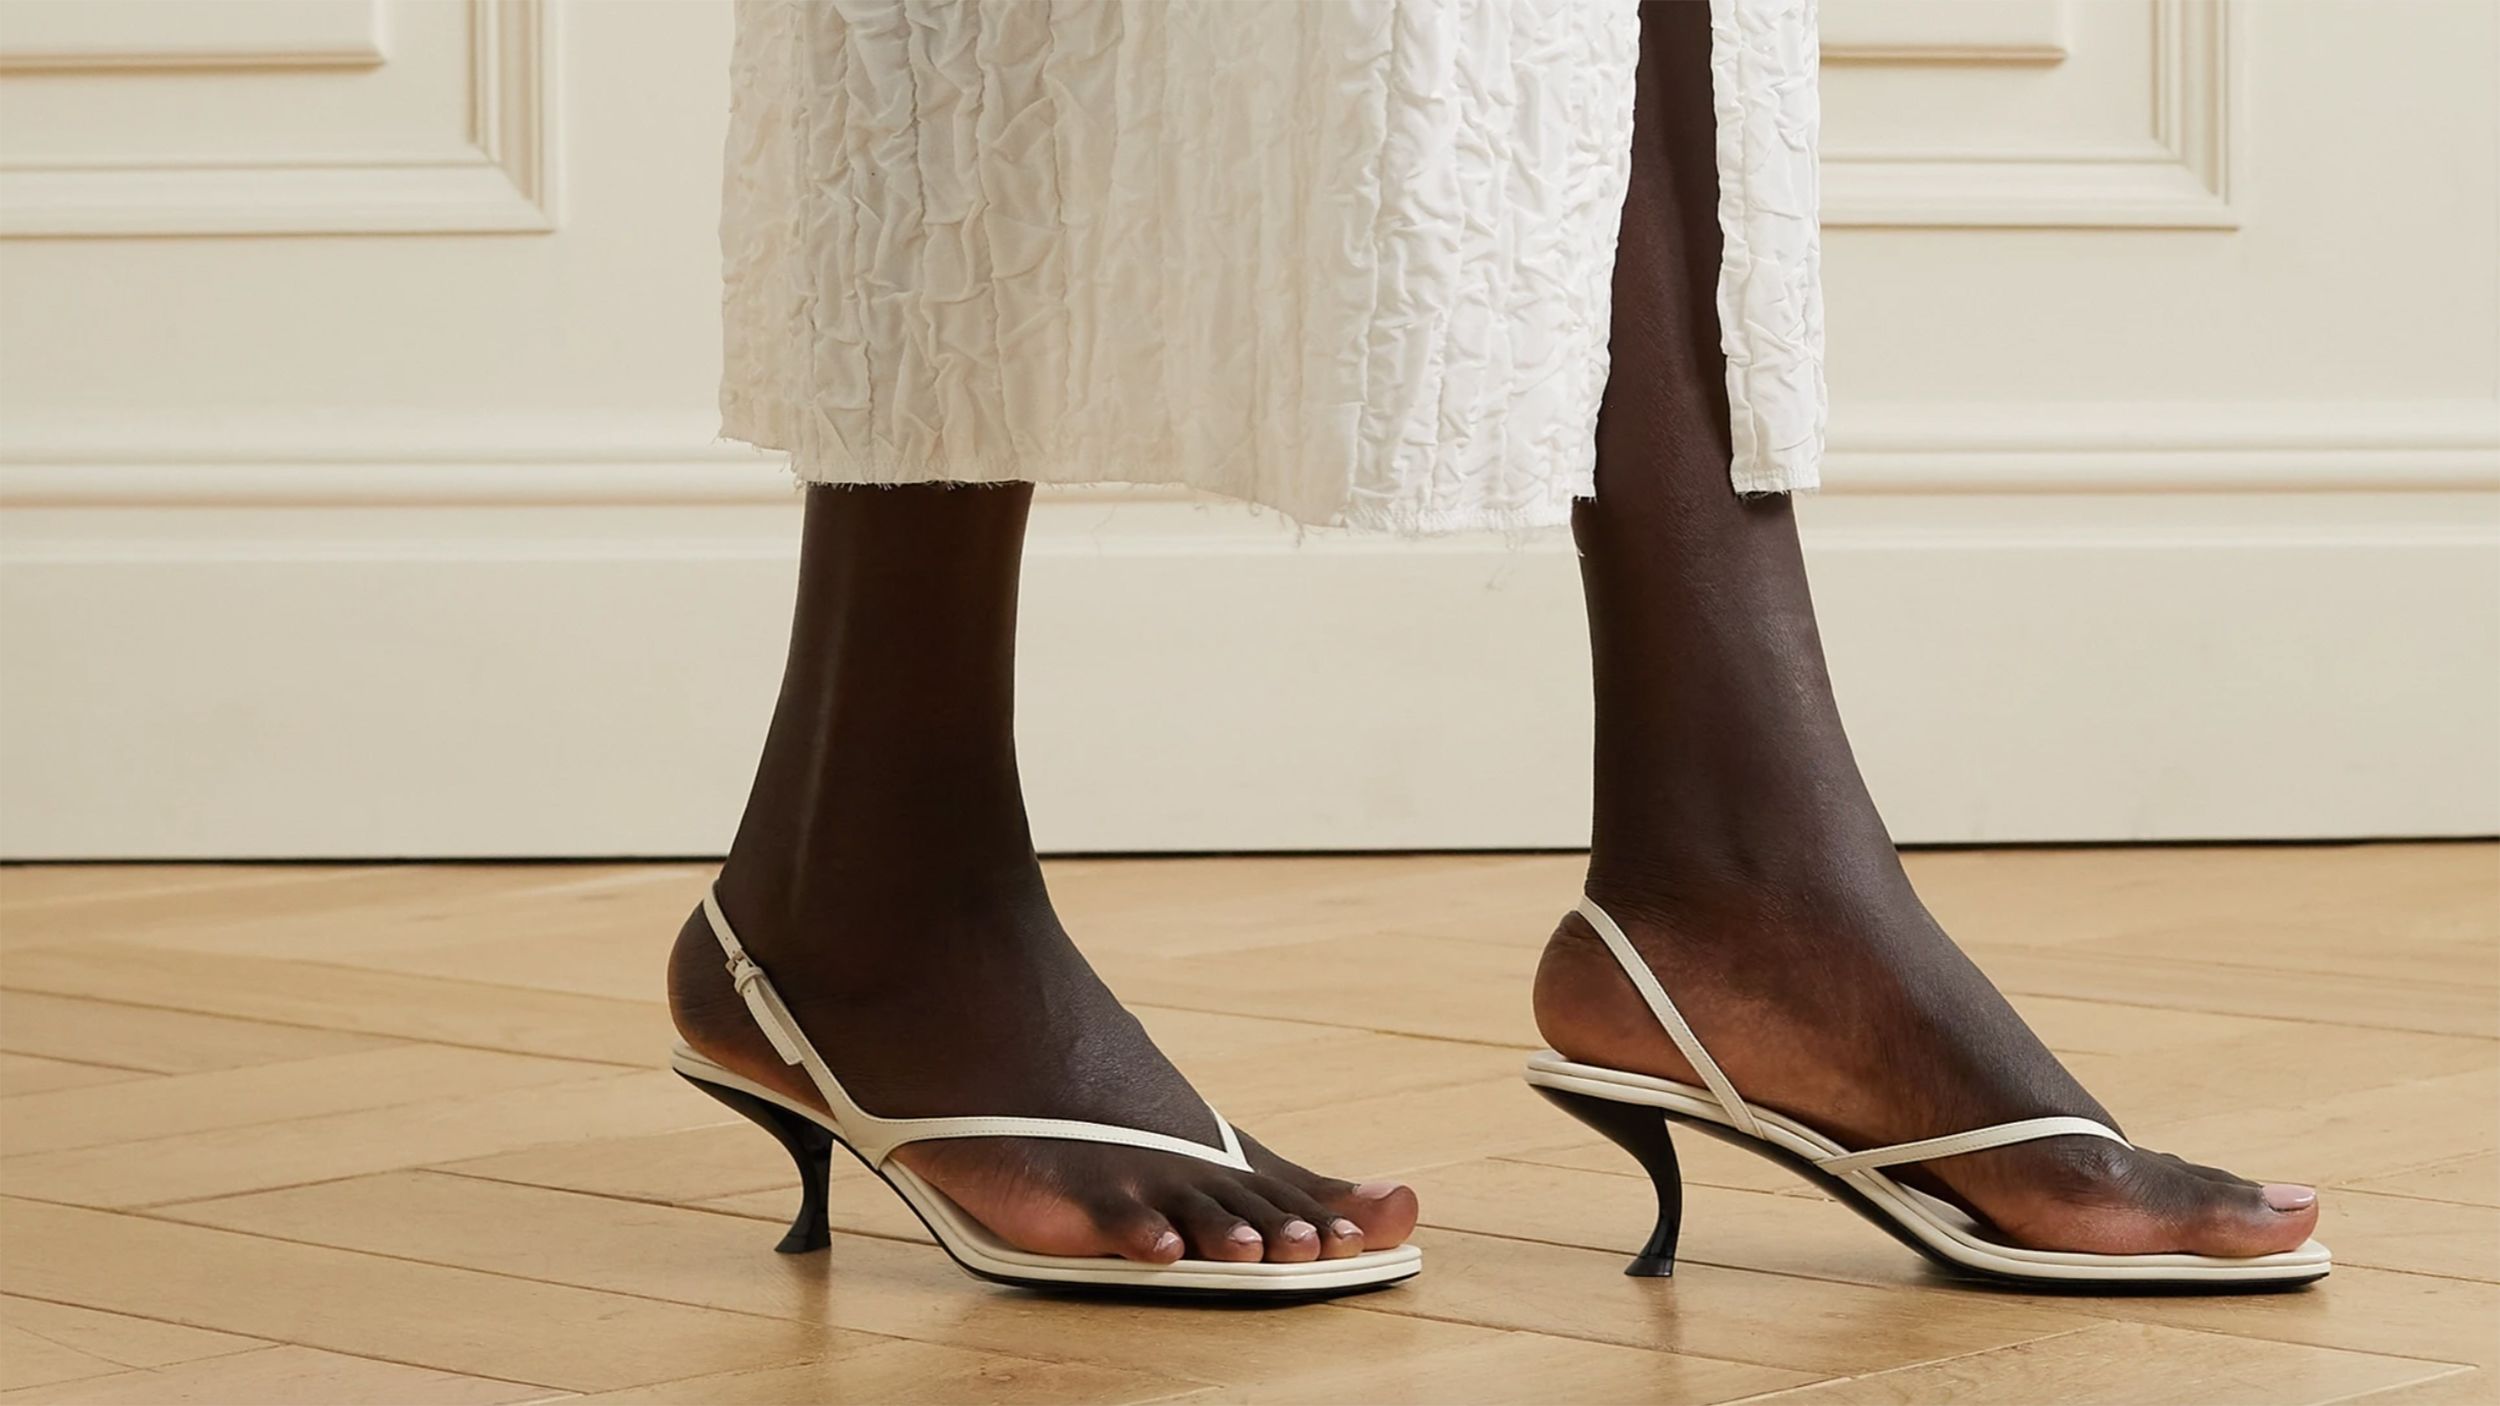 Gucci Flip Flops  Fashion shoes sandals, Trending fashion shoes, Expensive  shoes